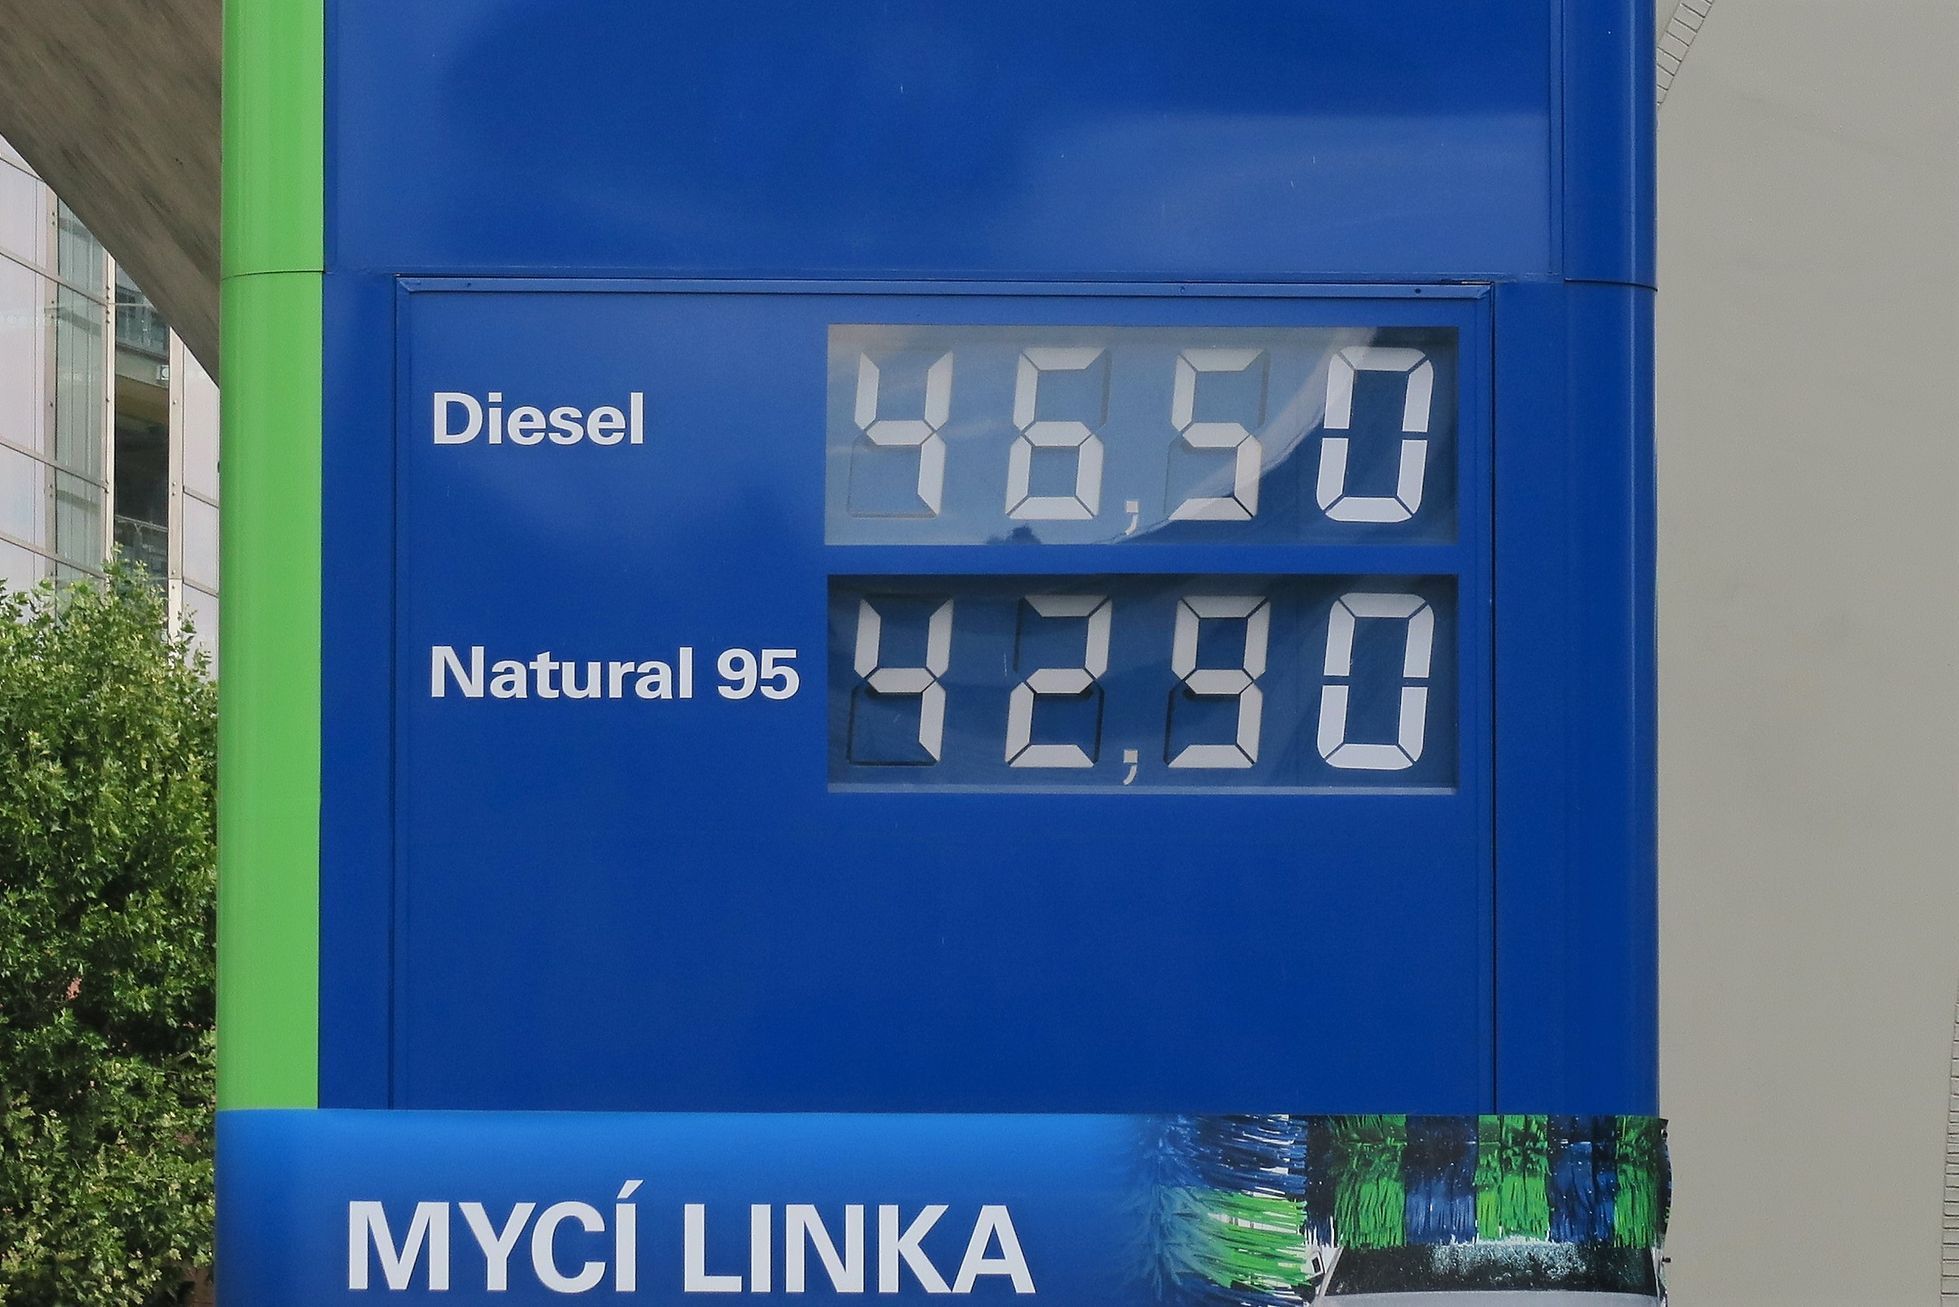 Cena nafty totem čerpací stanice